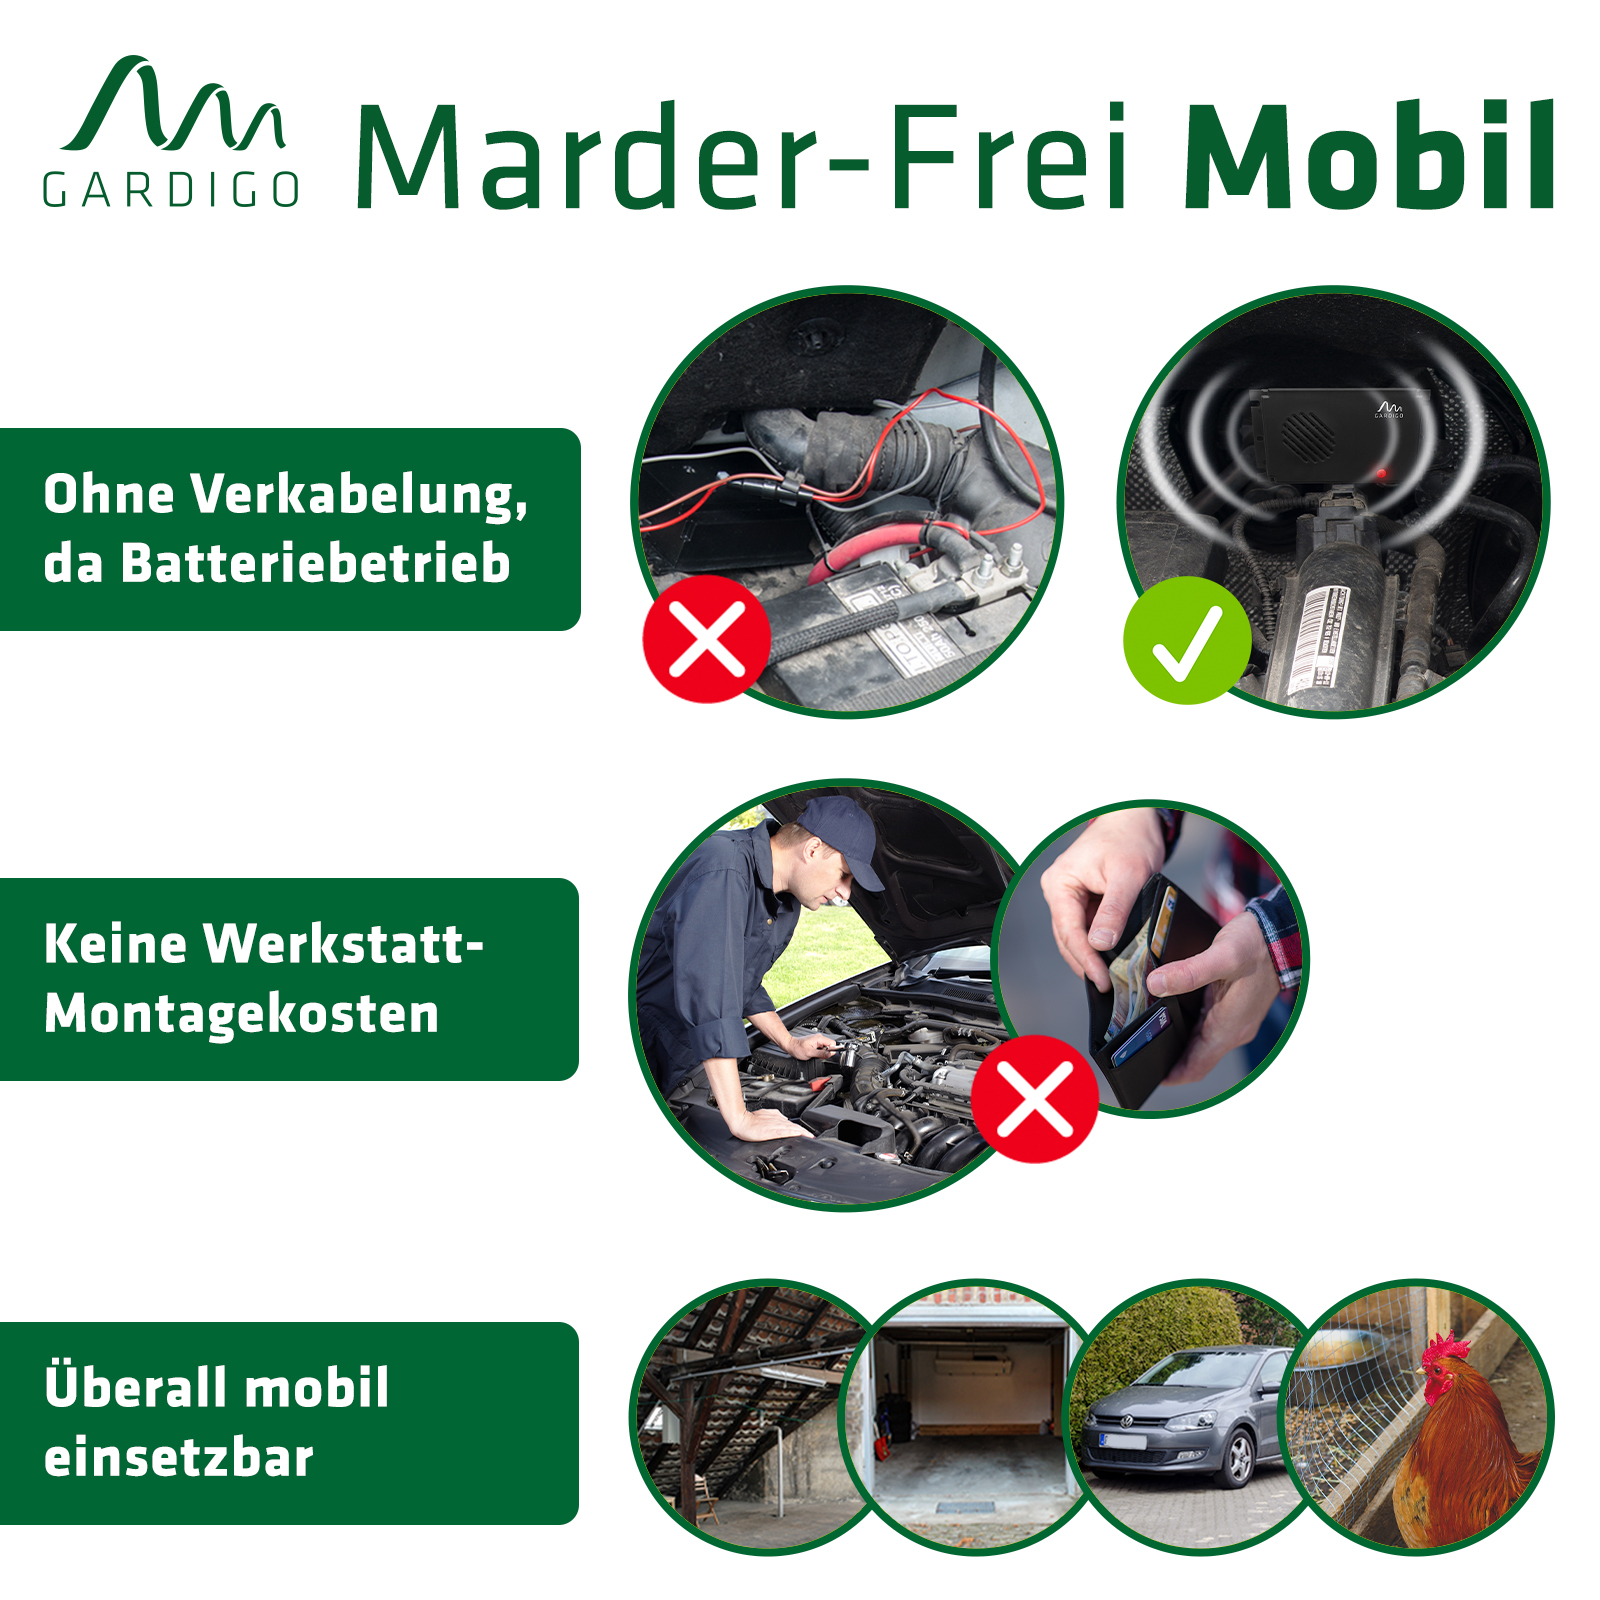 Marder-Frei Mobil, Batteriebetriebener Marderschreck